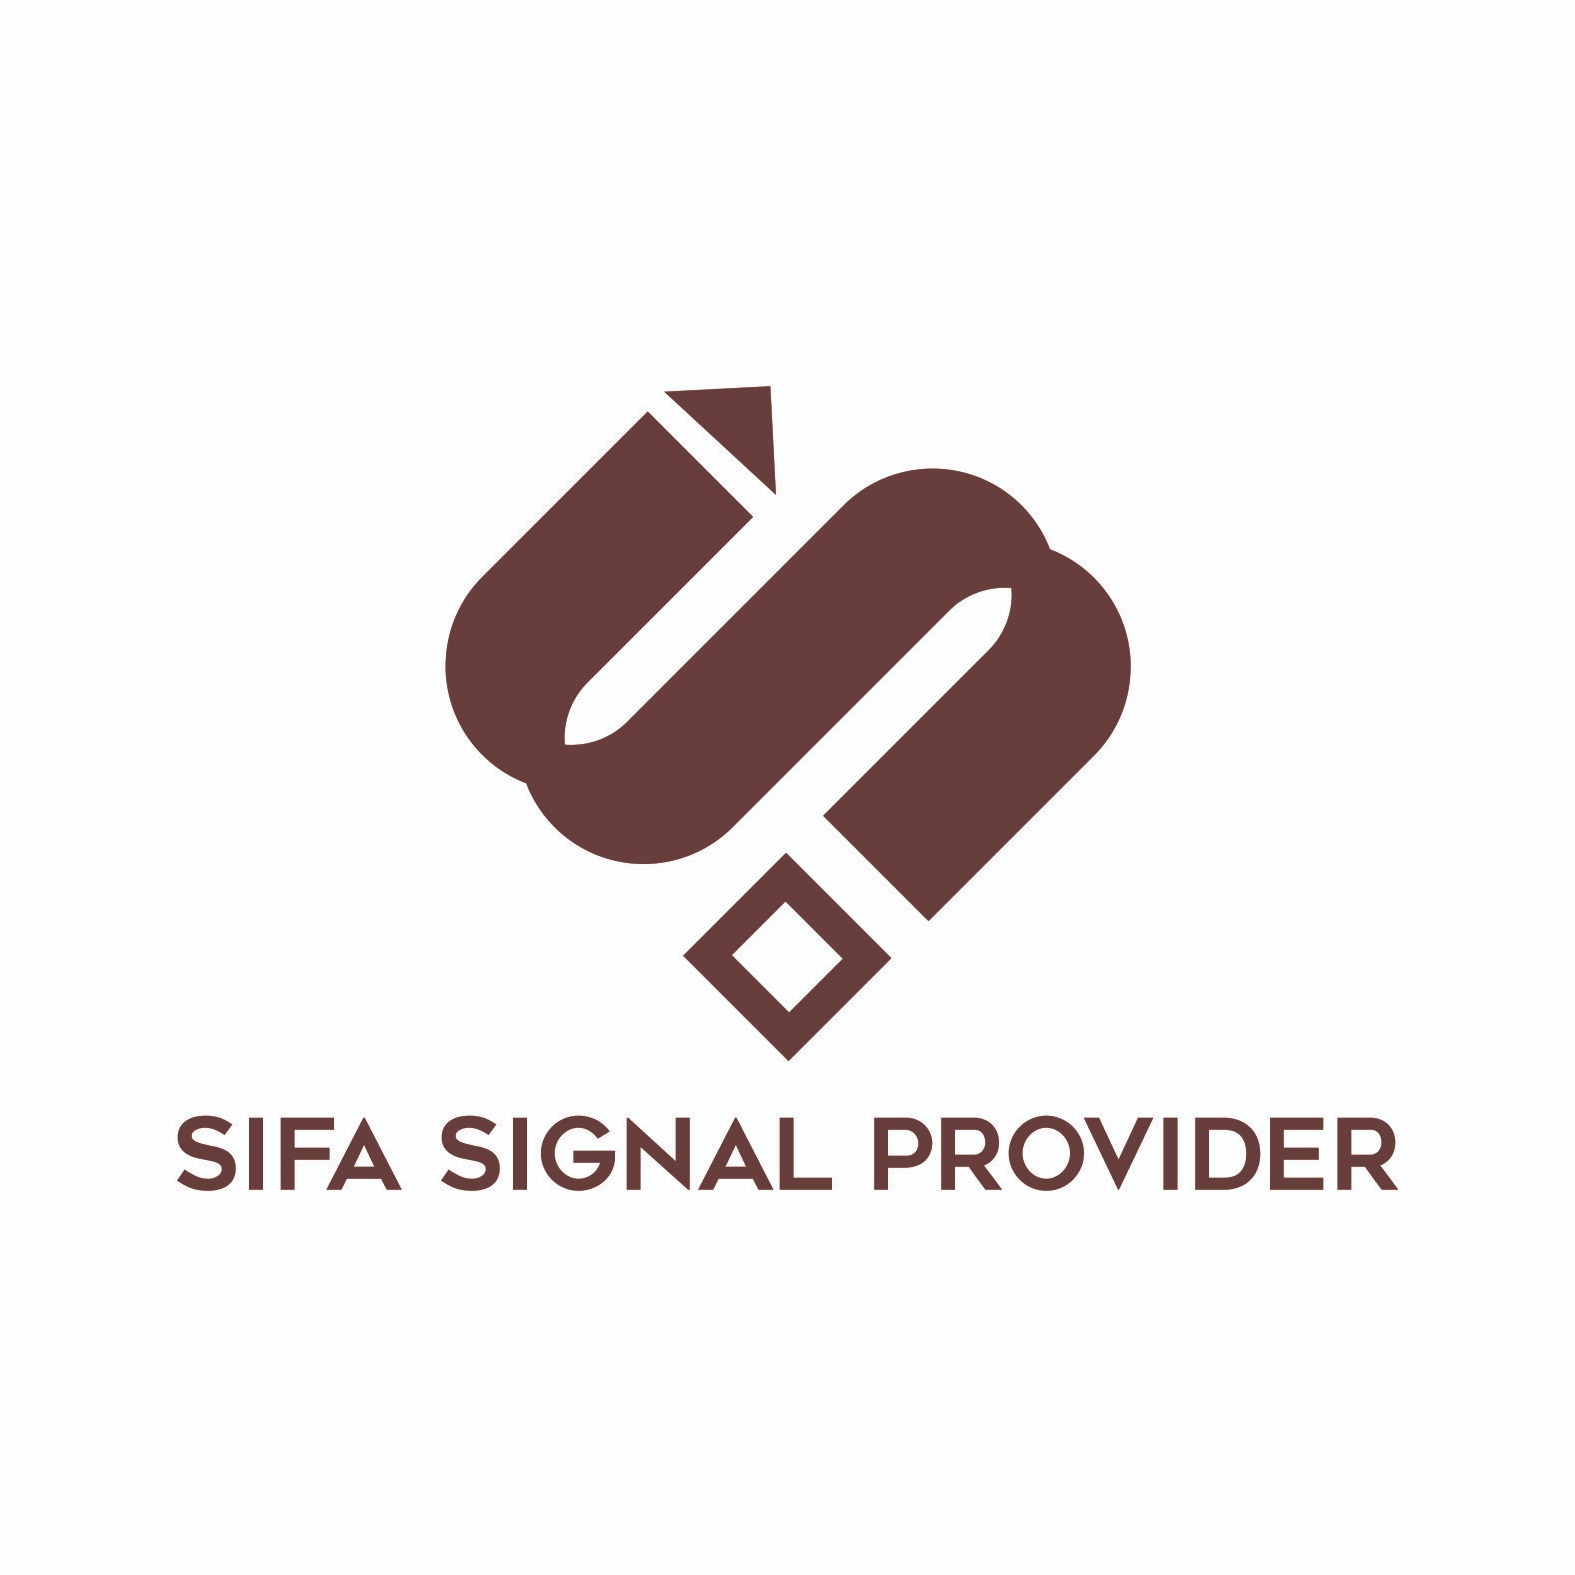 SIFA Signal Provider